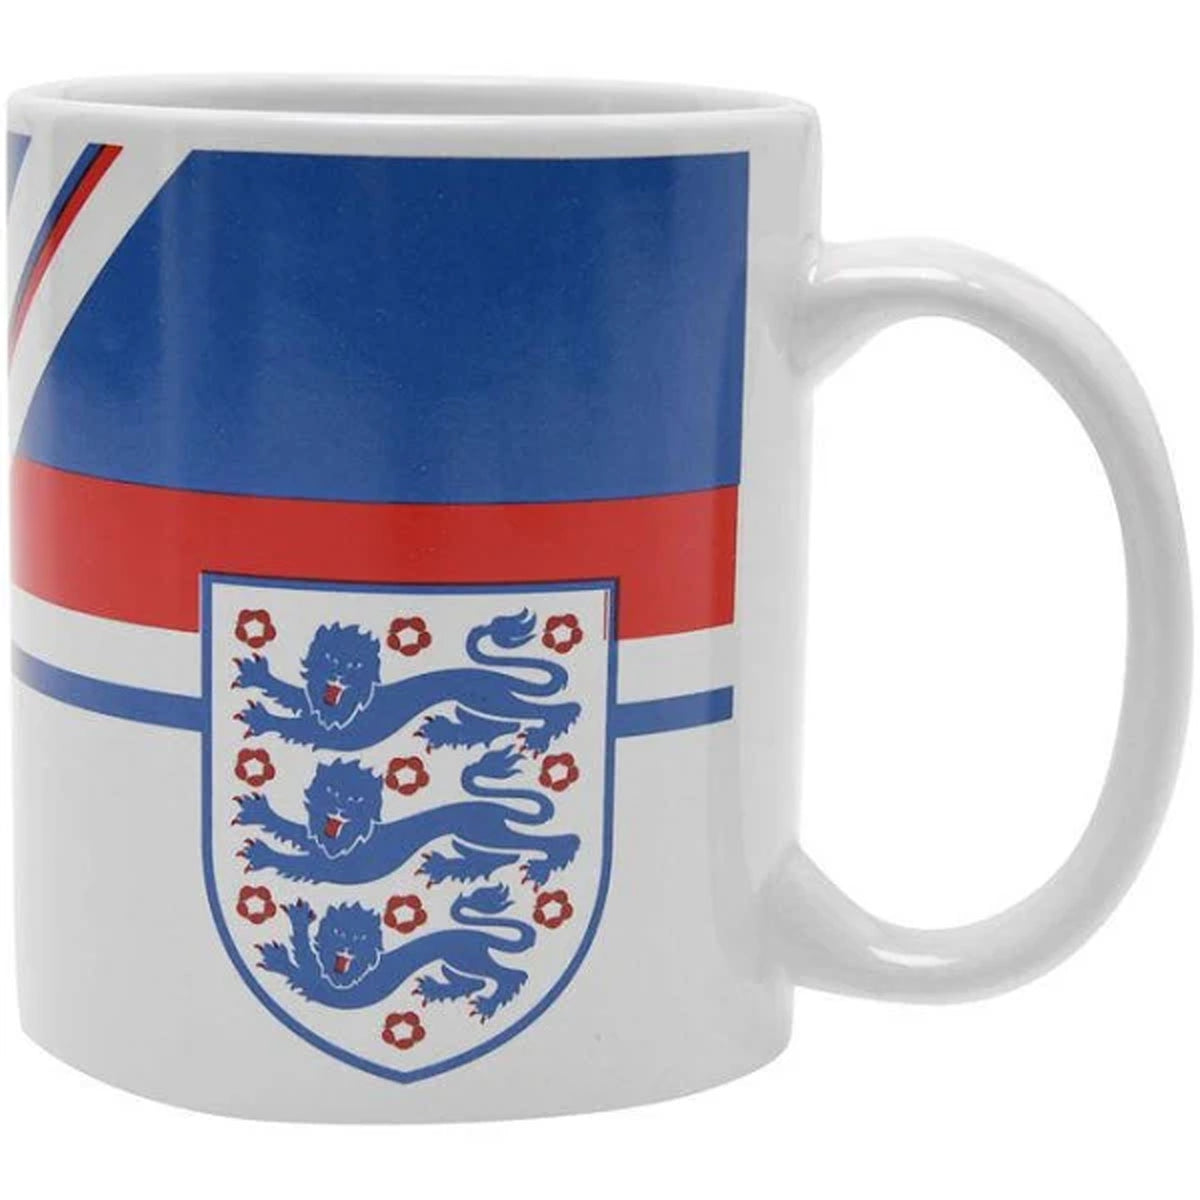 England 1982 Home Kit Mug